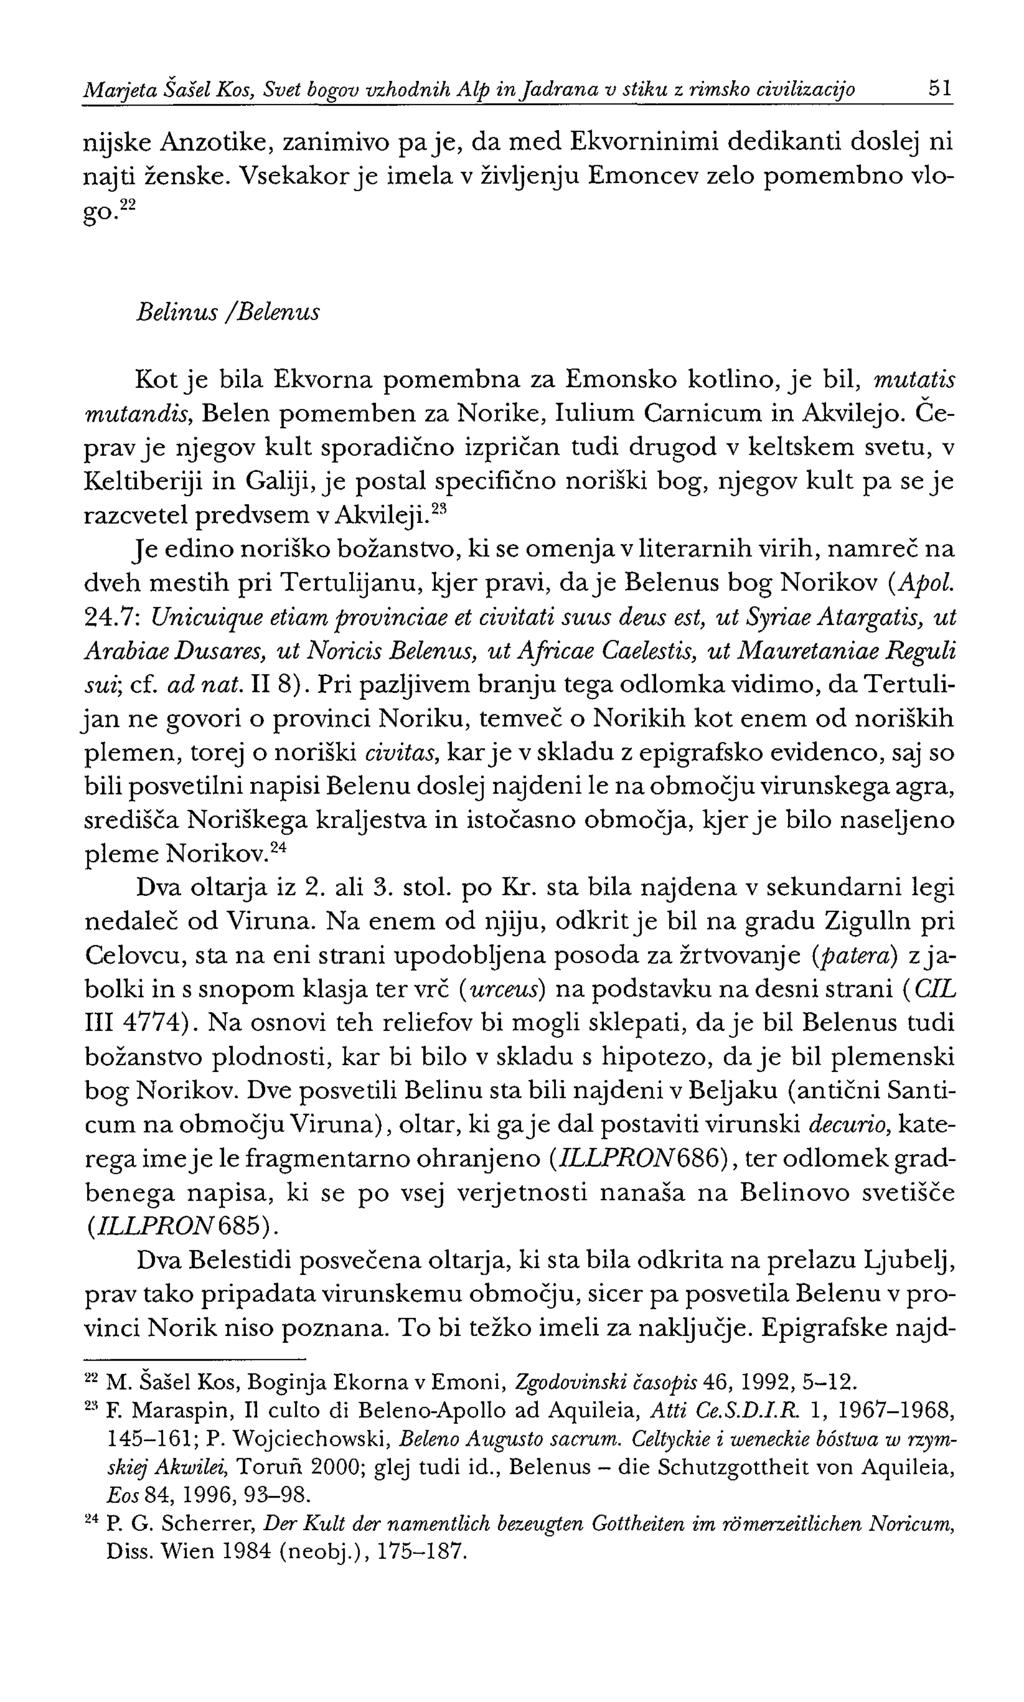 Marjeta Šašel Kos, Svet bogov vzhodnih Alp in Jadrana v stiku z rimsko civilizacijo 51 nijske Anzotike, zanimivo paje, da med Ekvorninimi dedikanti doslej ni najti ženske.